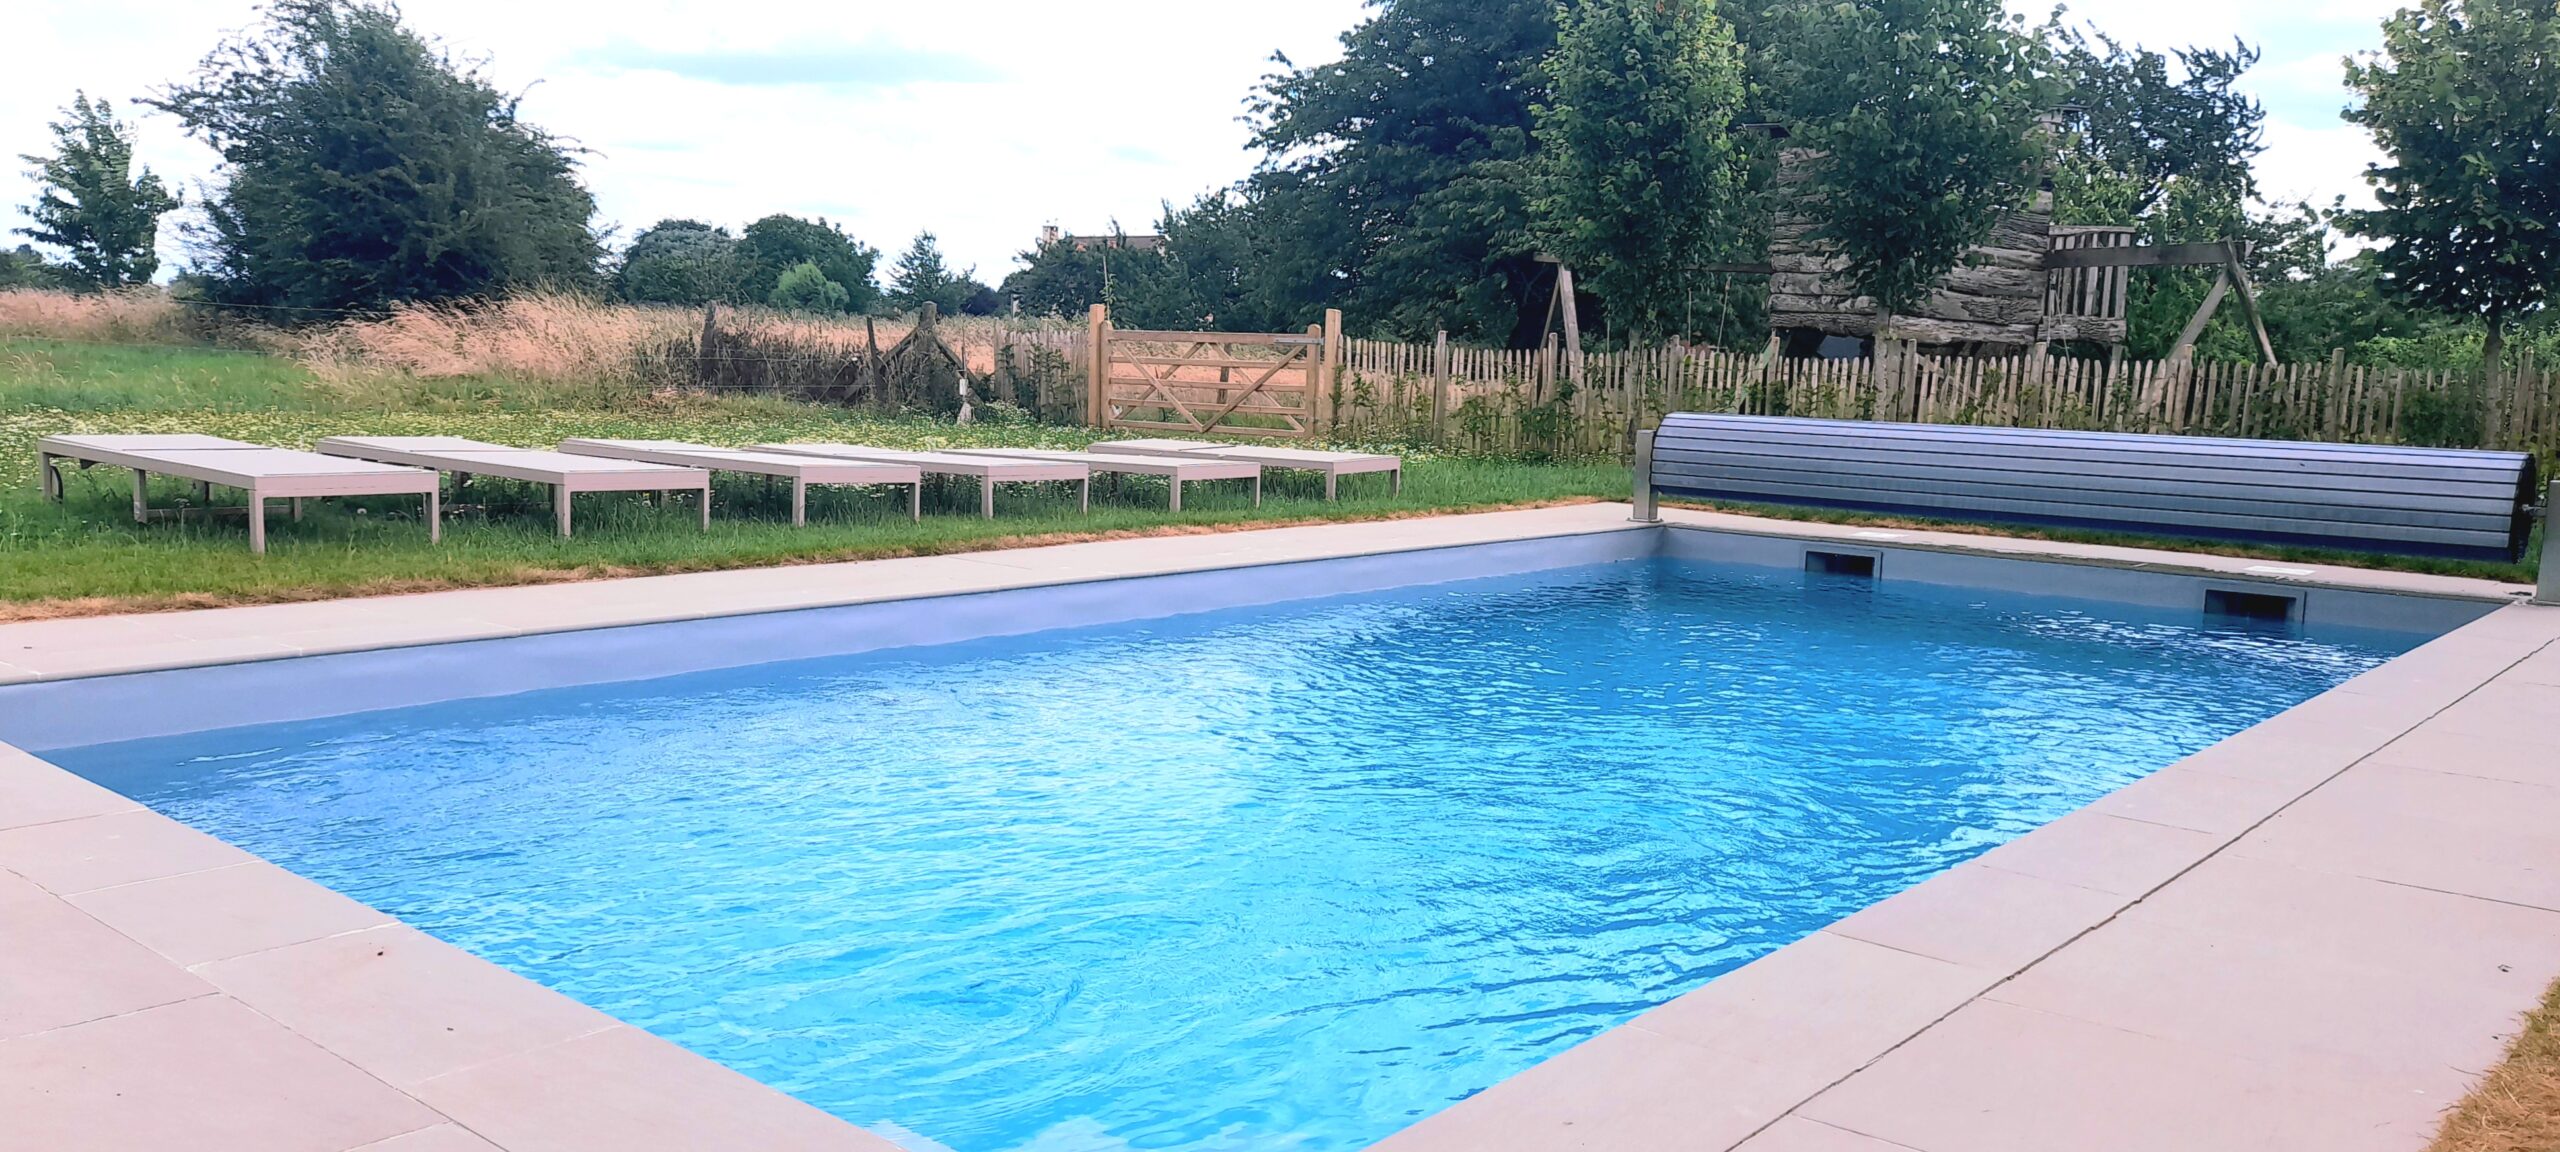 La piscine de la Cense de Baudecet Location de vacances chaleureuse à La Bruyère